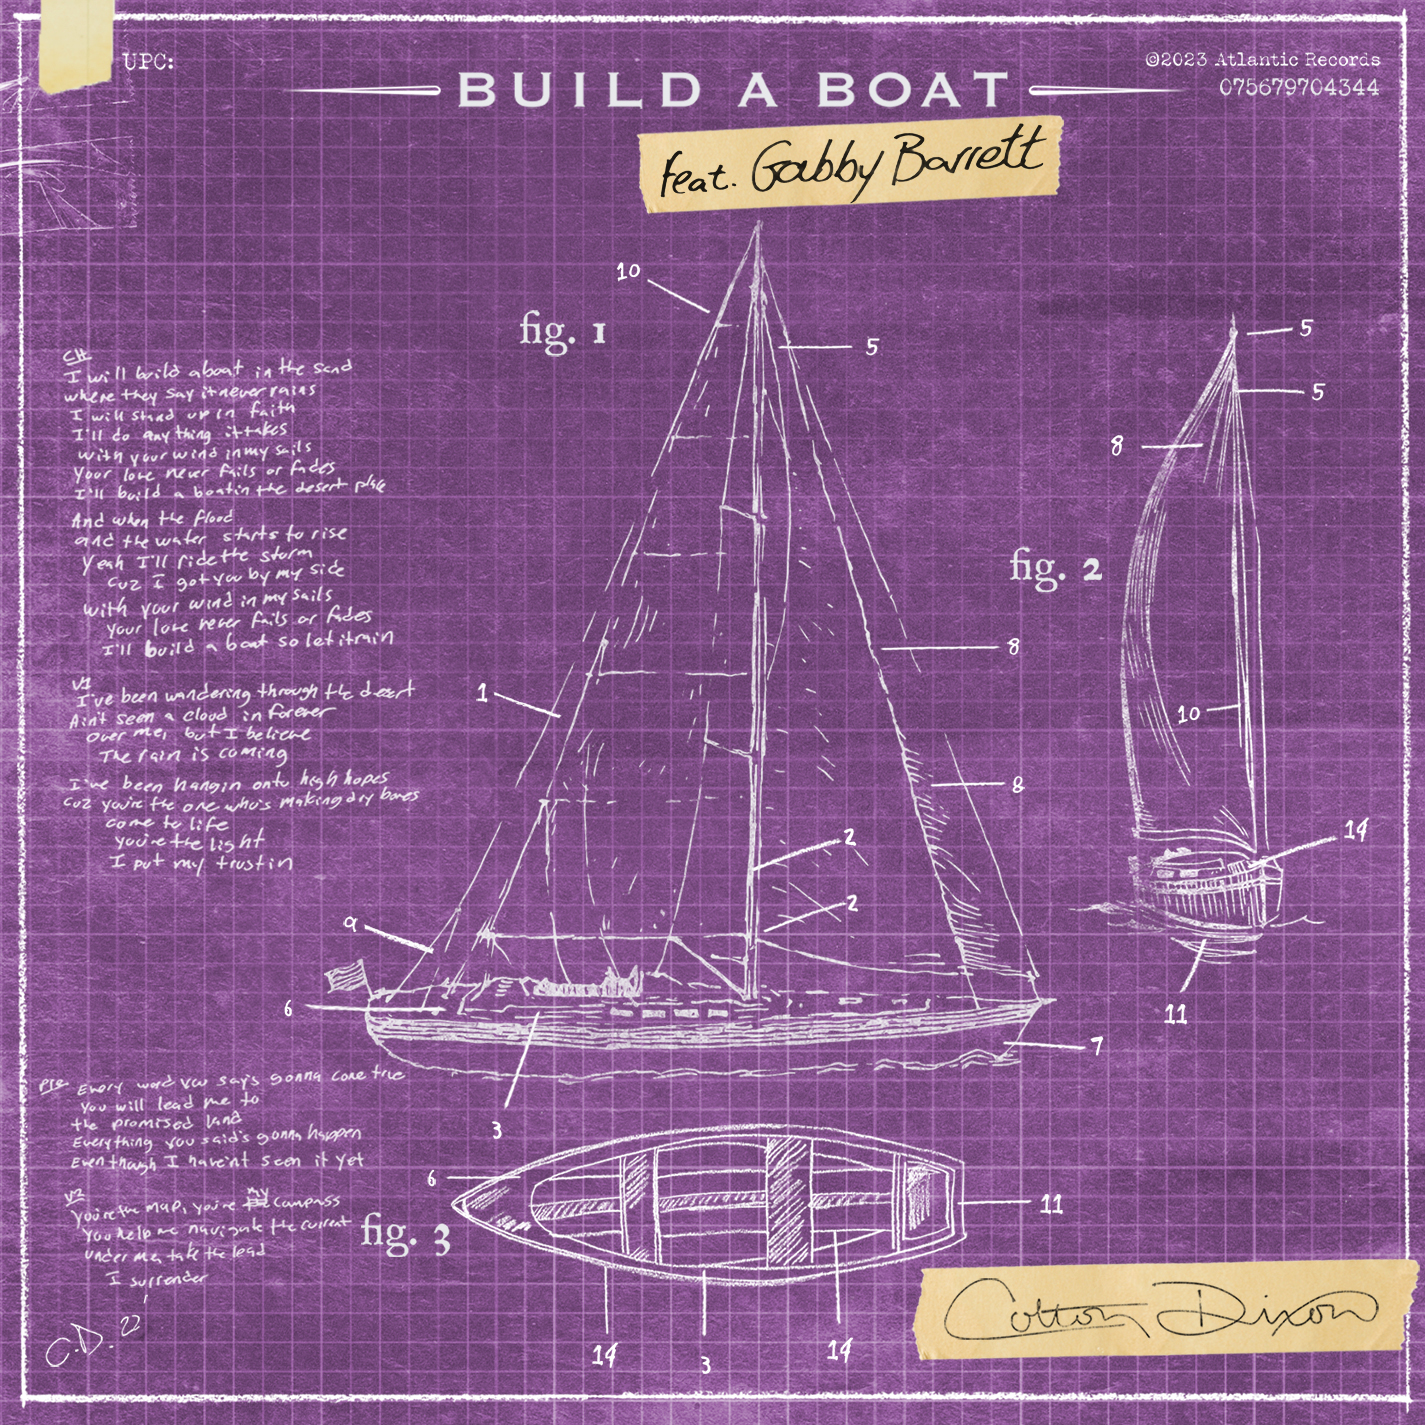 Colton Dixon feat Gabby Barrett - Build A Boat